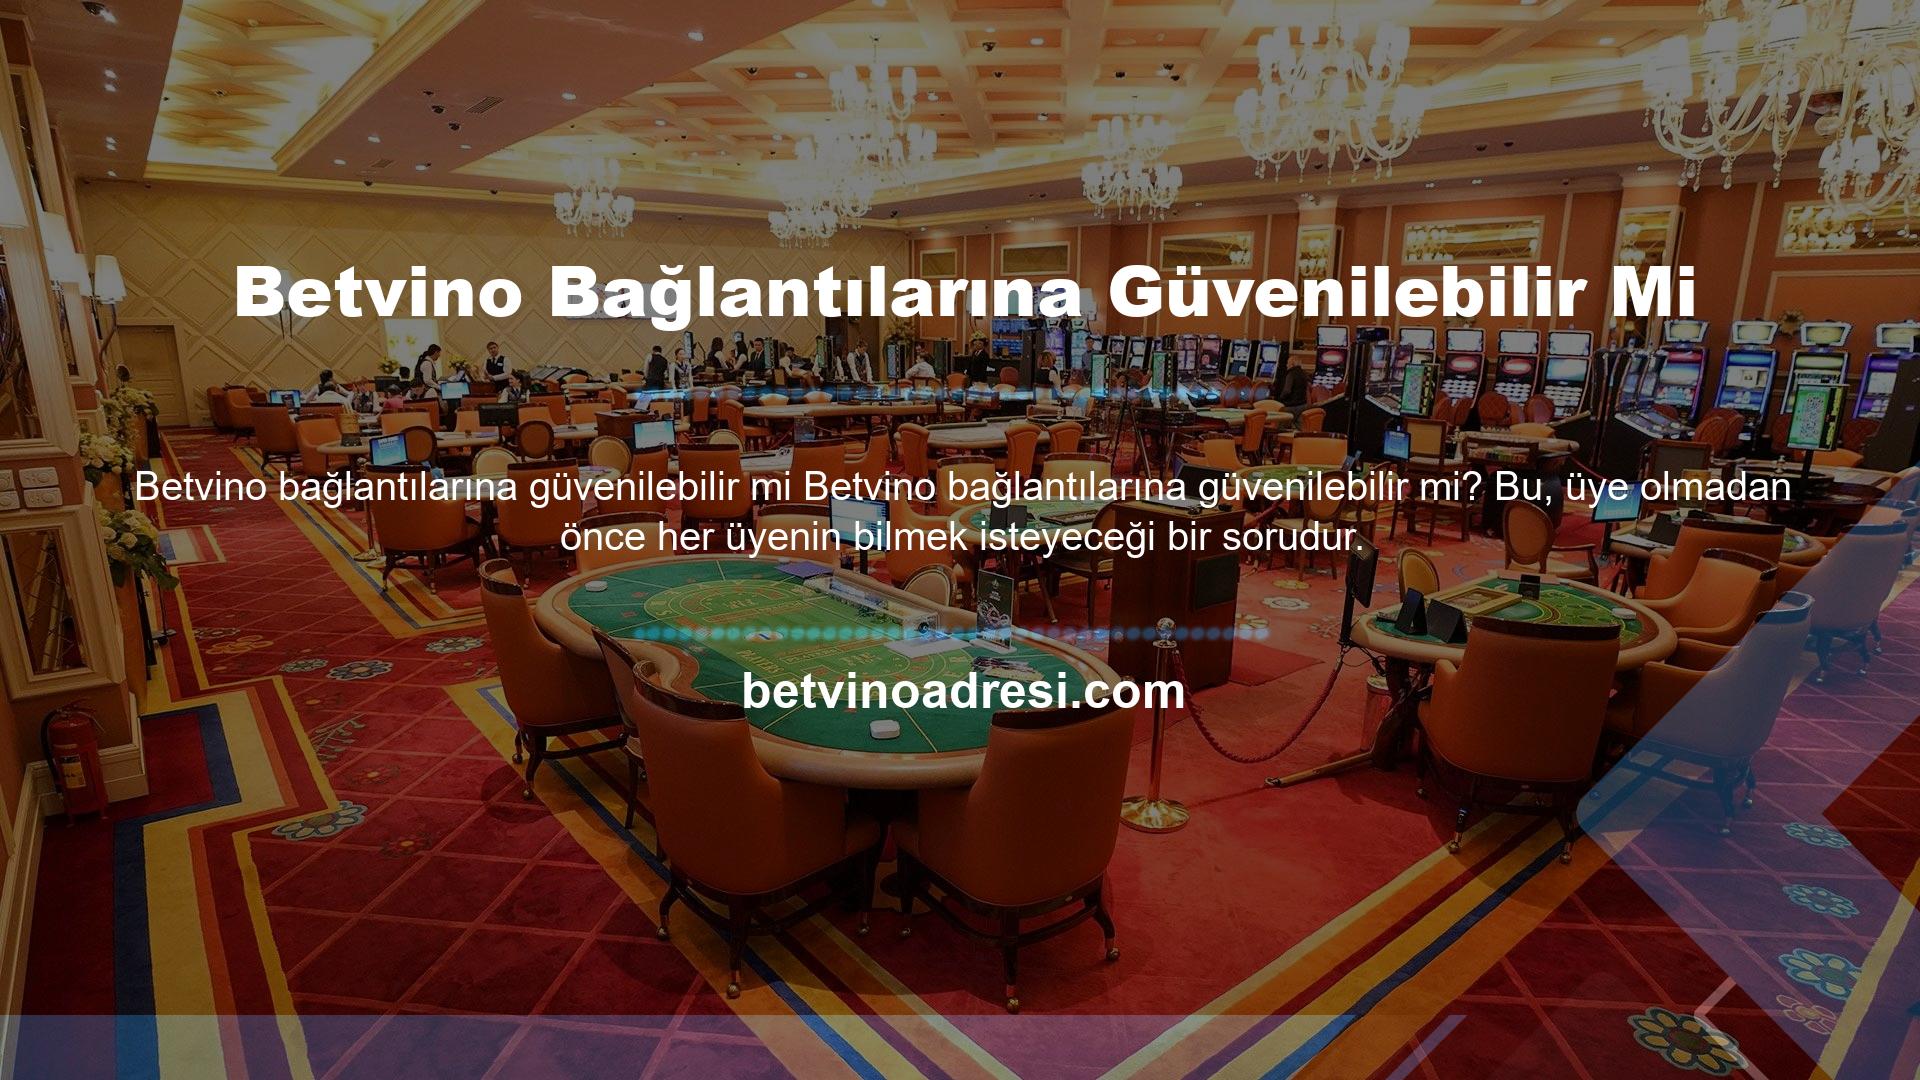 Bu makalenin doğruluğu, Türkiye'de desteklenmeyen casino siteleri için güvenilirlik sorunlarını ortadan kaldırmak amacıyla oluşturulan lisans dosyası incelenerek doğrulanabilir